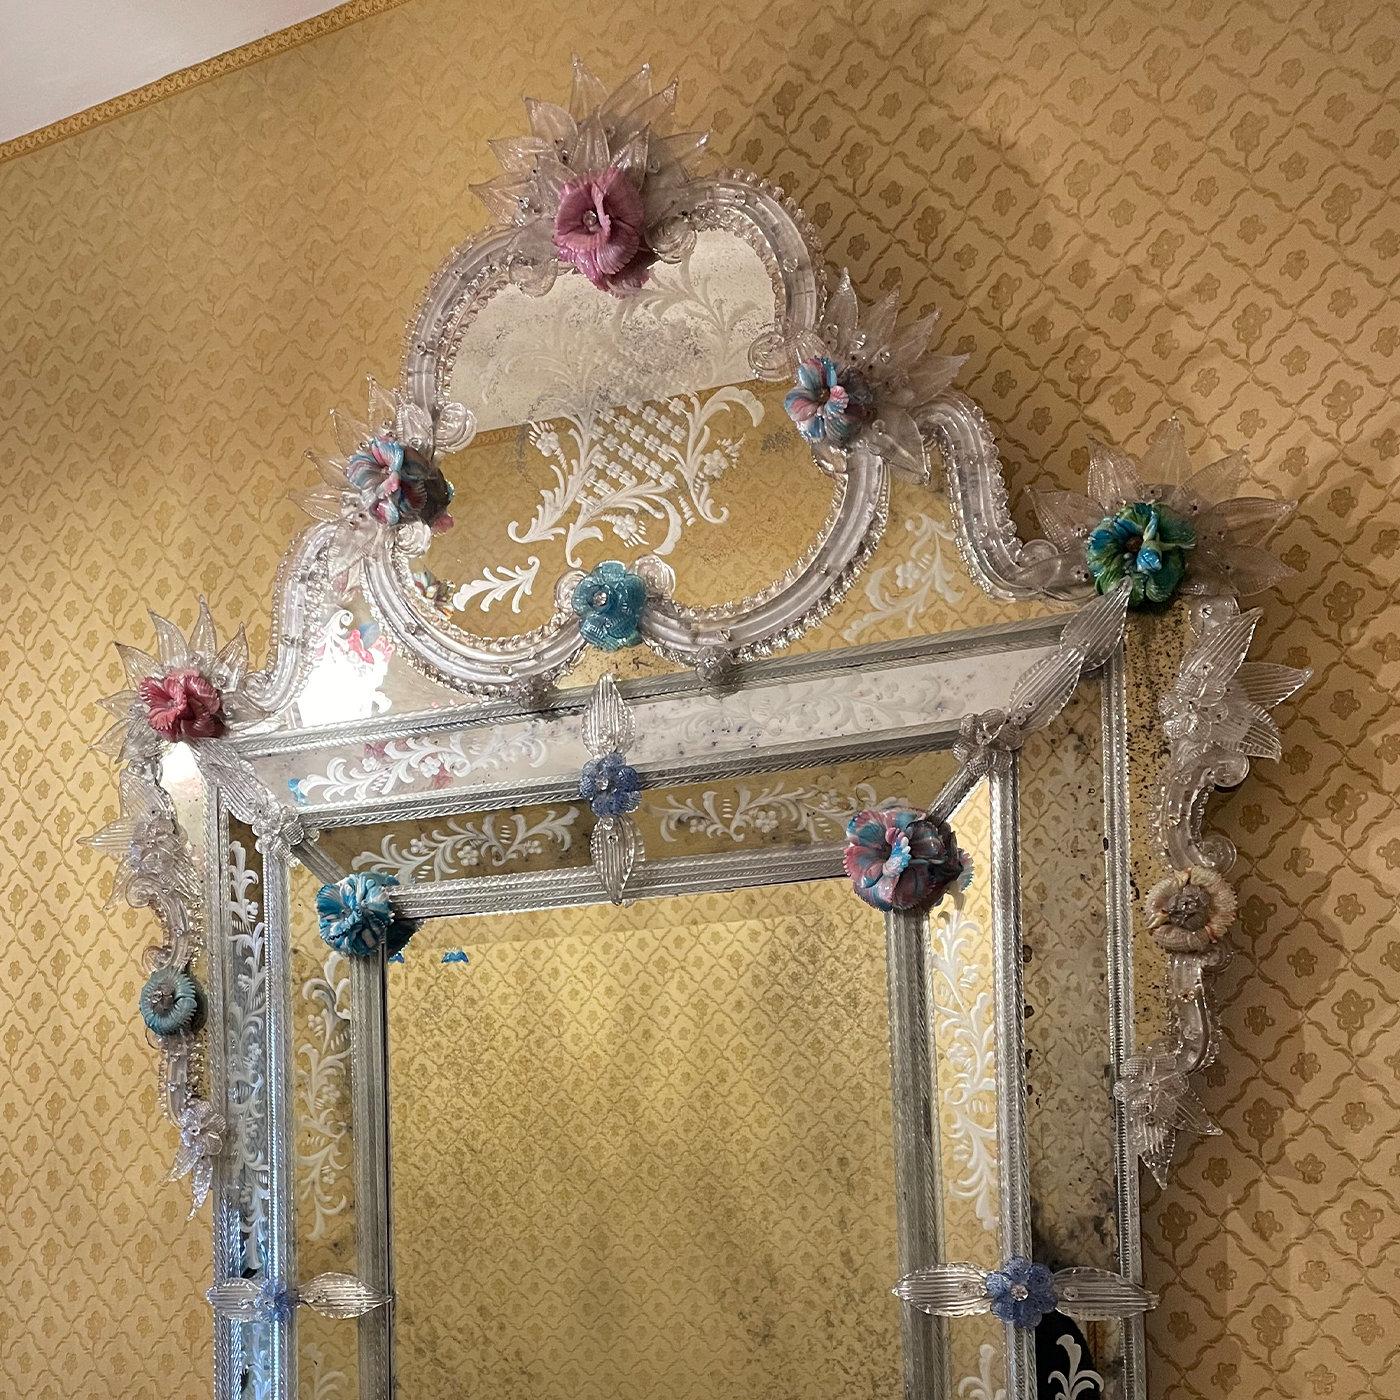 Un ensemble de feuilles et de frondes en cristal antique embellit le cadre sinueux de ce sublime miroir unique, fabriqué à la main par des maîtres verriers vénitiens. Les inserts floraux tridimensionnels en pâte de verre multicolore ajoutent une